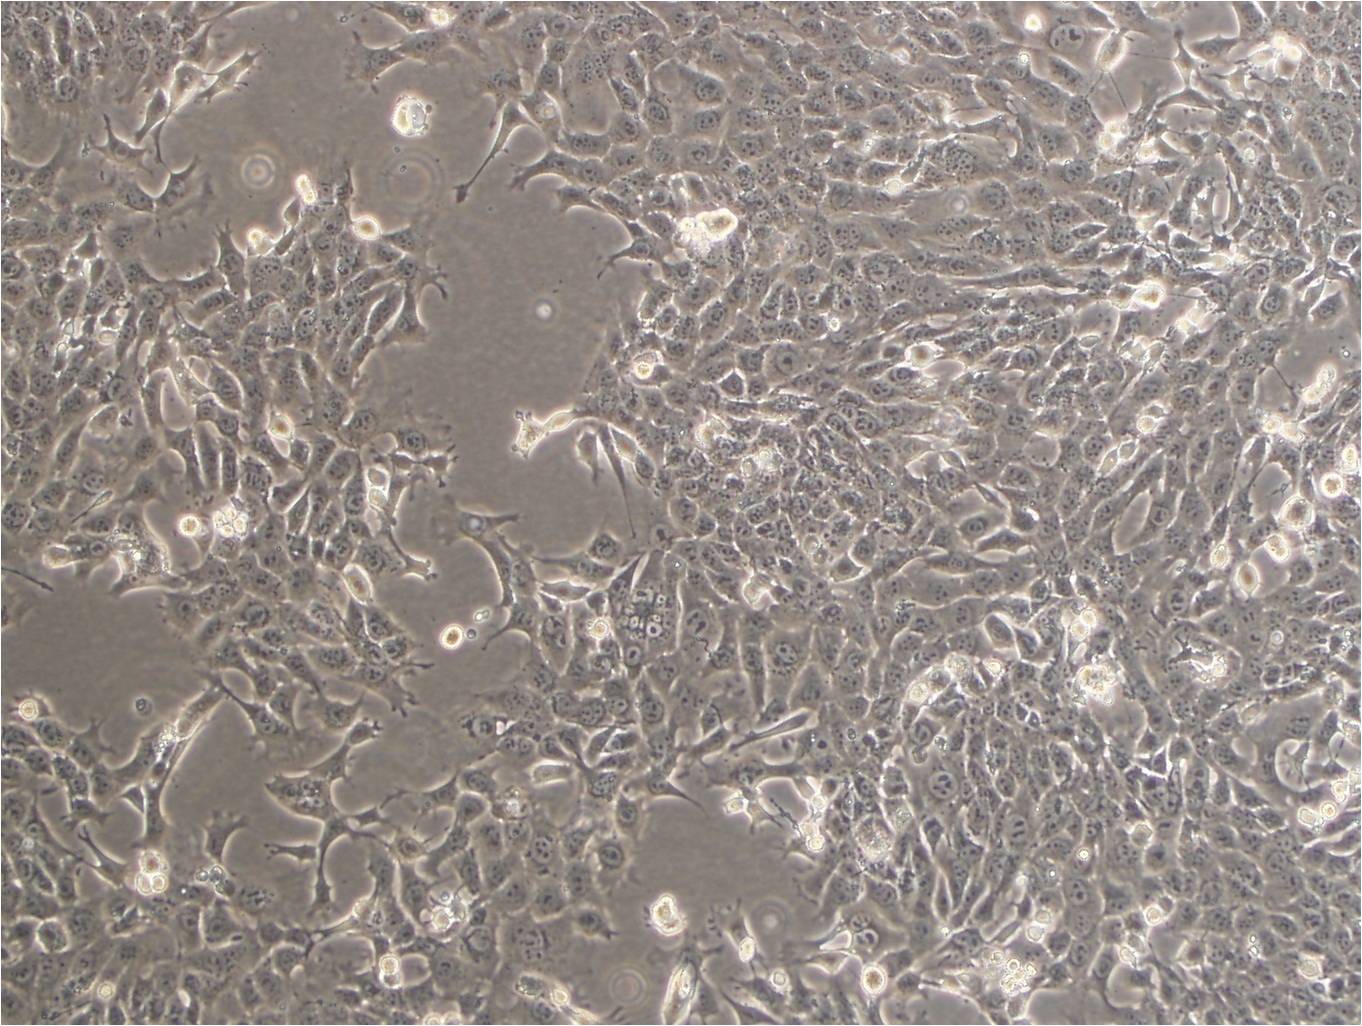 HL-1 Fresh Cells|小鼠心房肌细胞(送STR基因图谱),HL-1 Fresh Cells